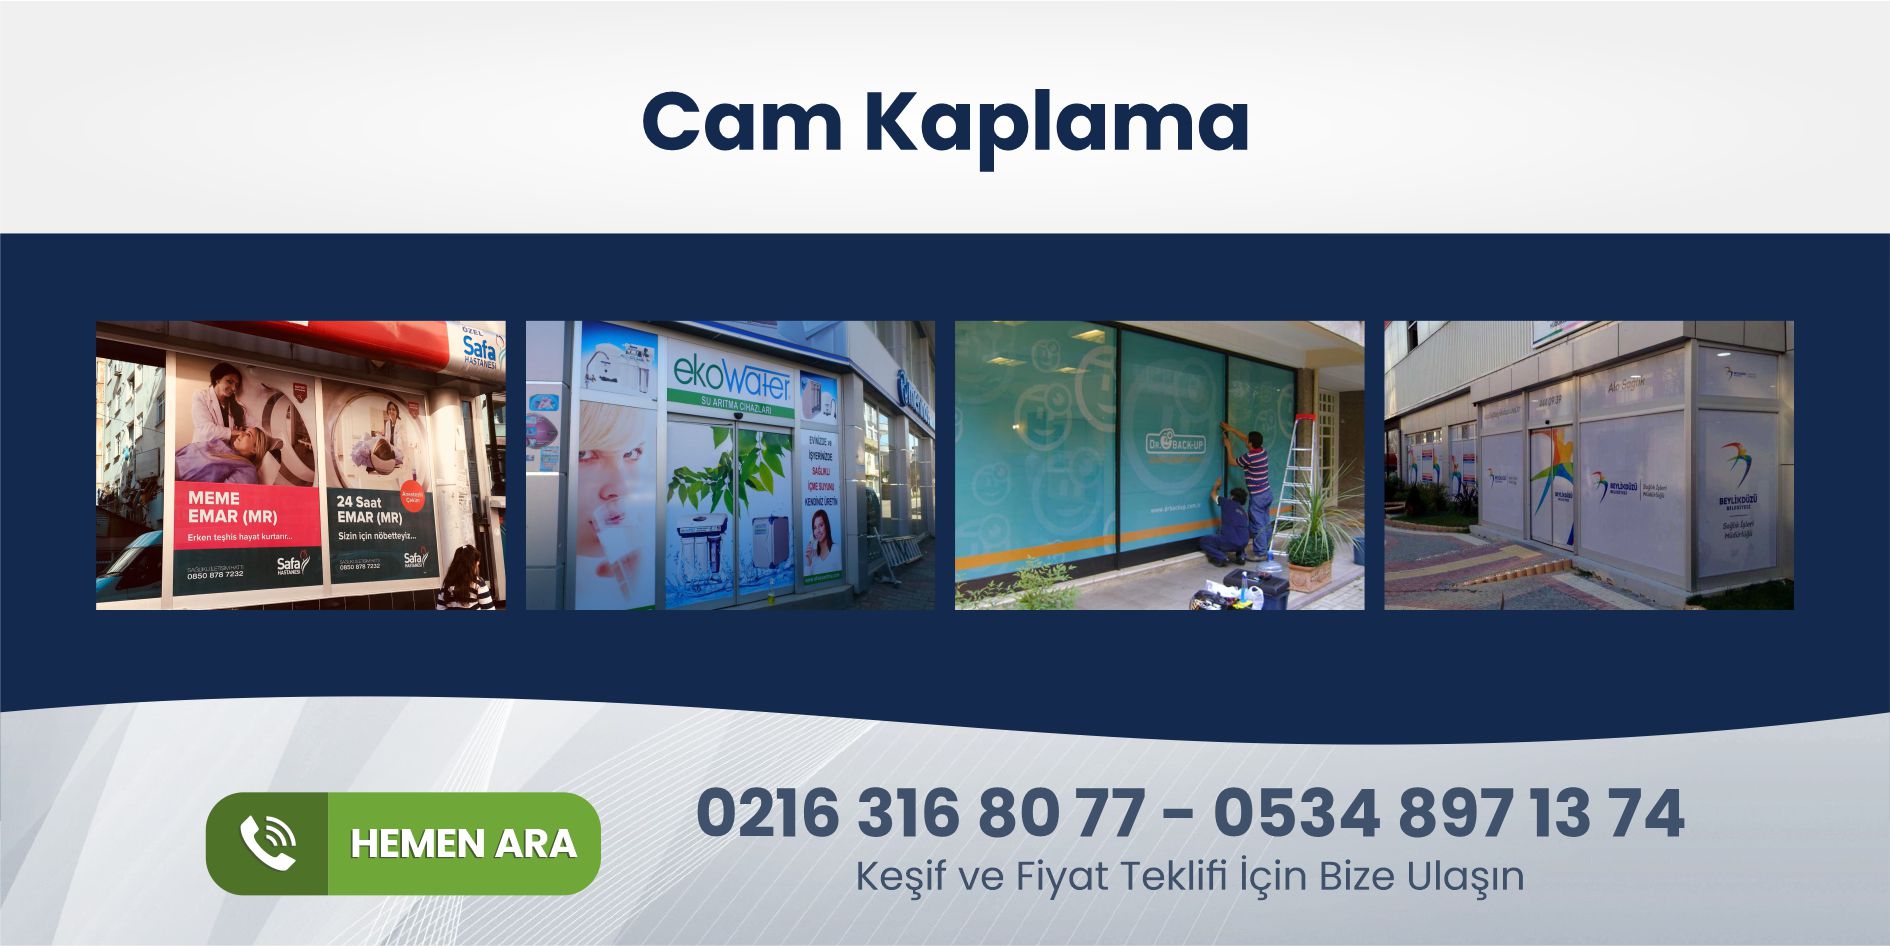 You are currently viewing Kadıköy Cam Reklam Kaplama